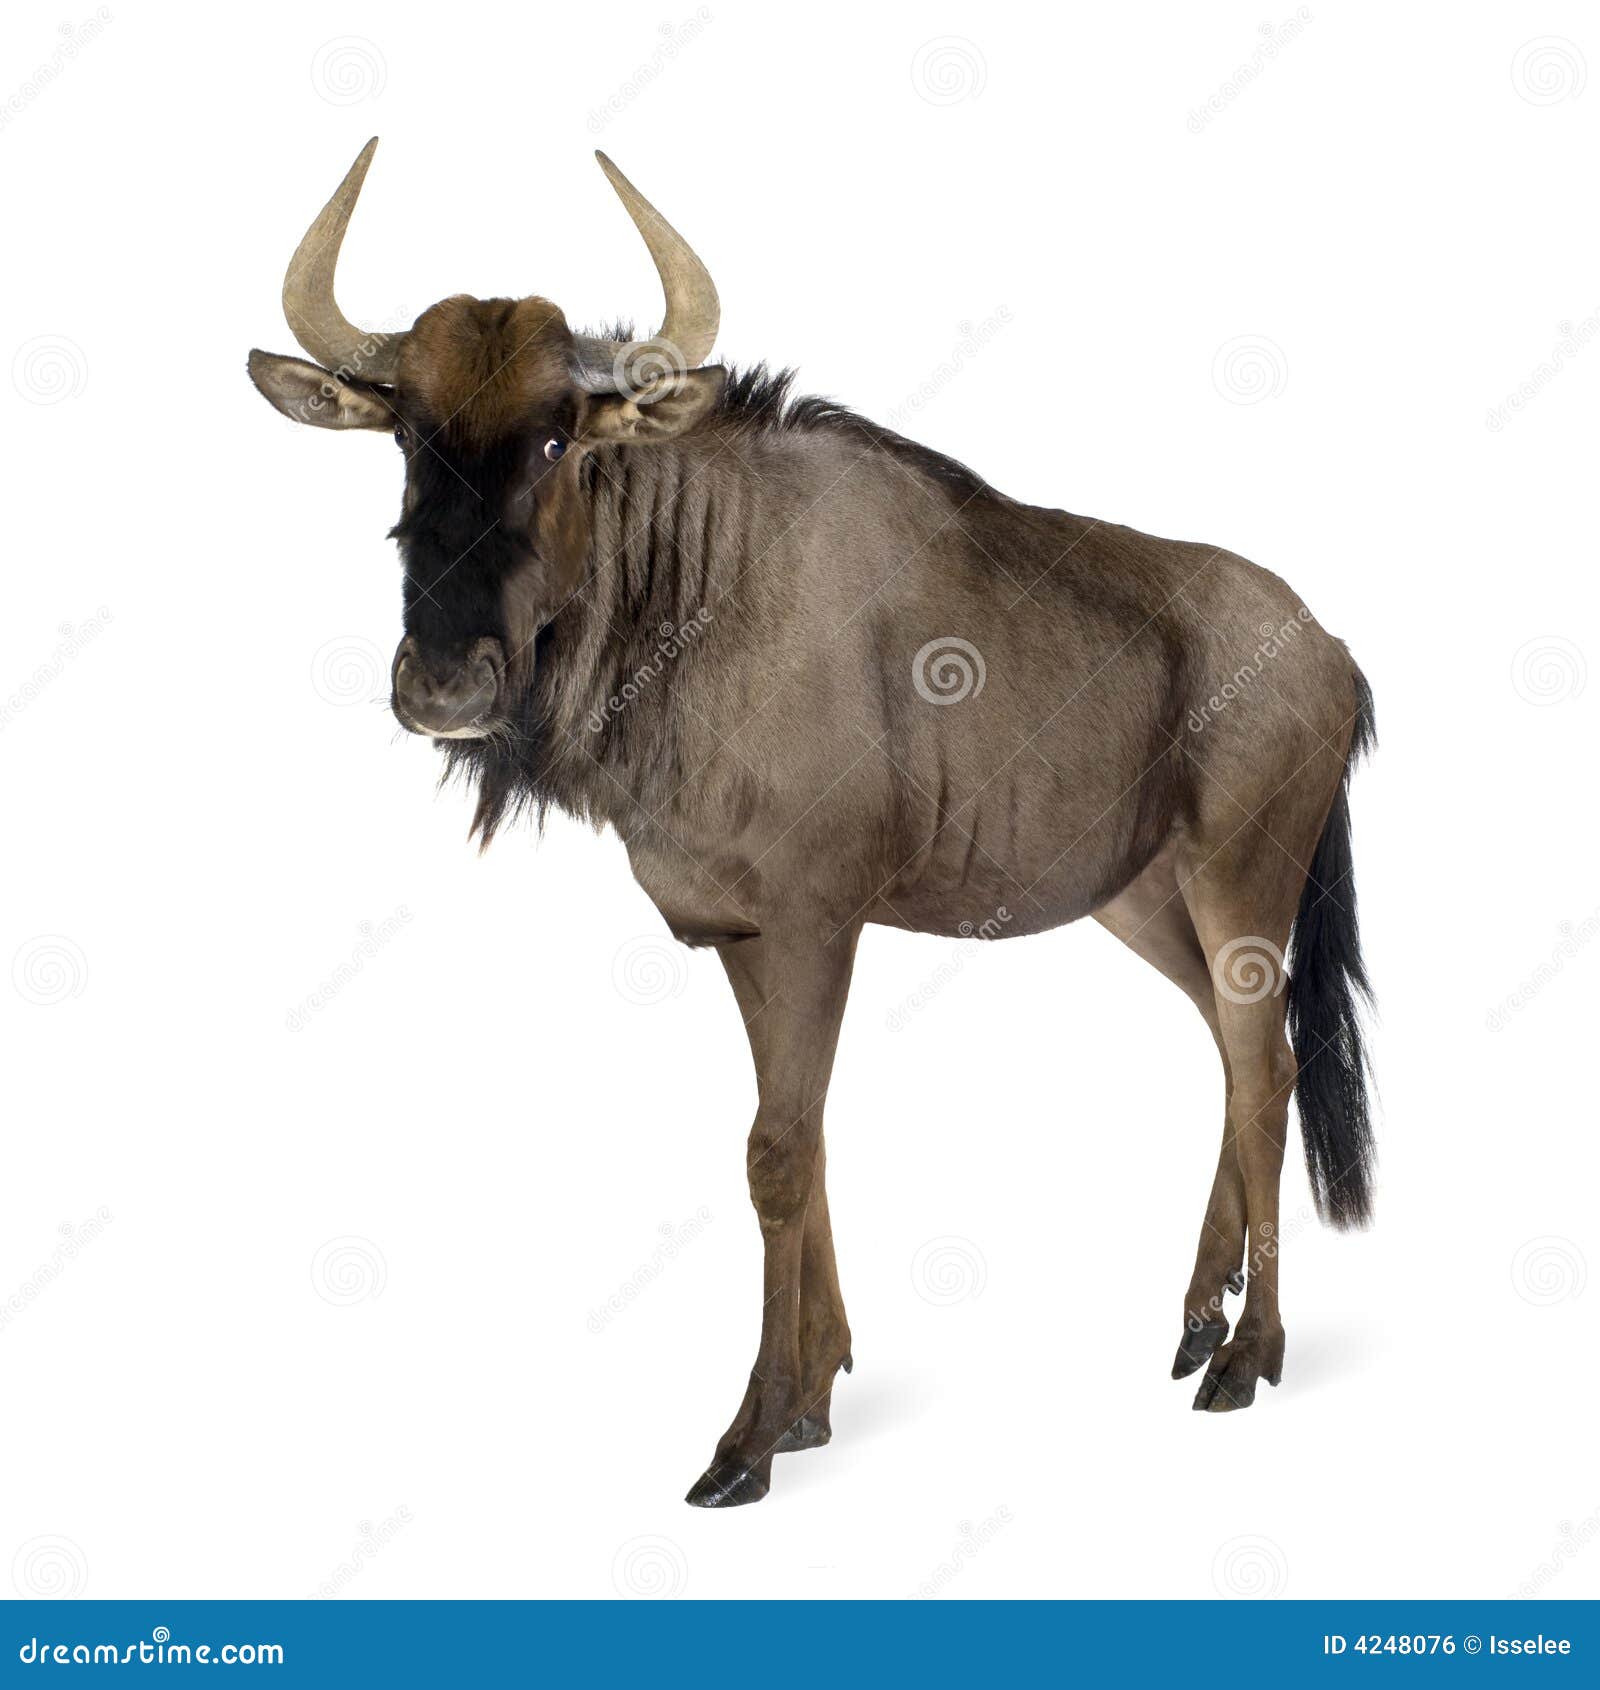 blue wildebeest - connochaetes taurinus